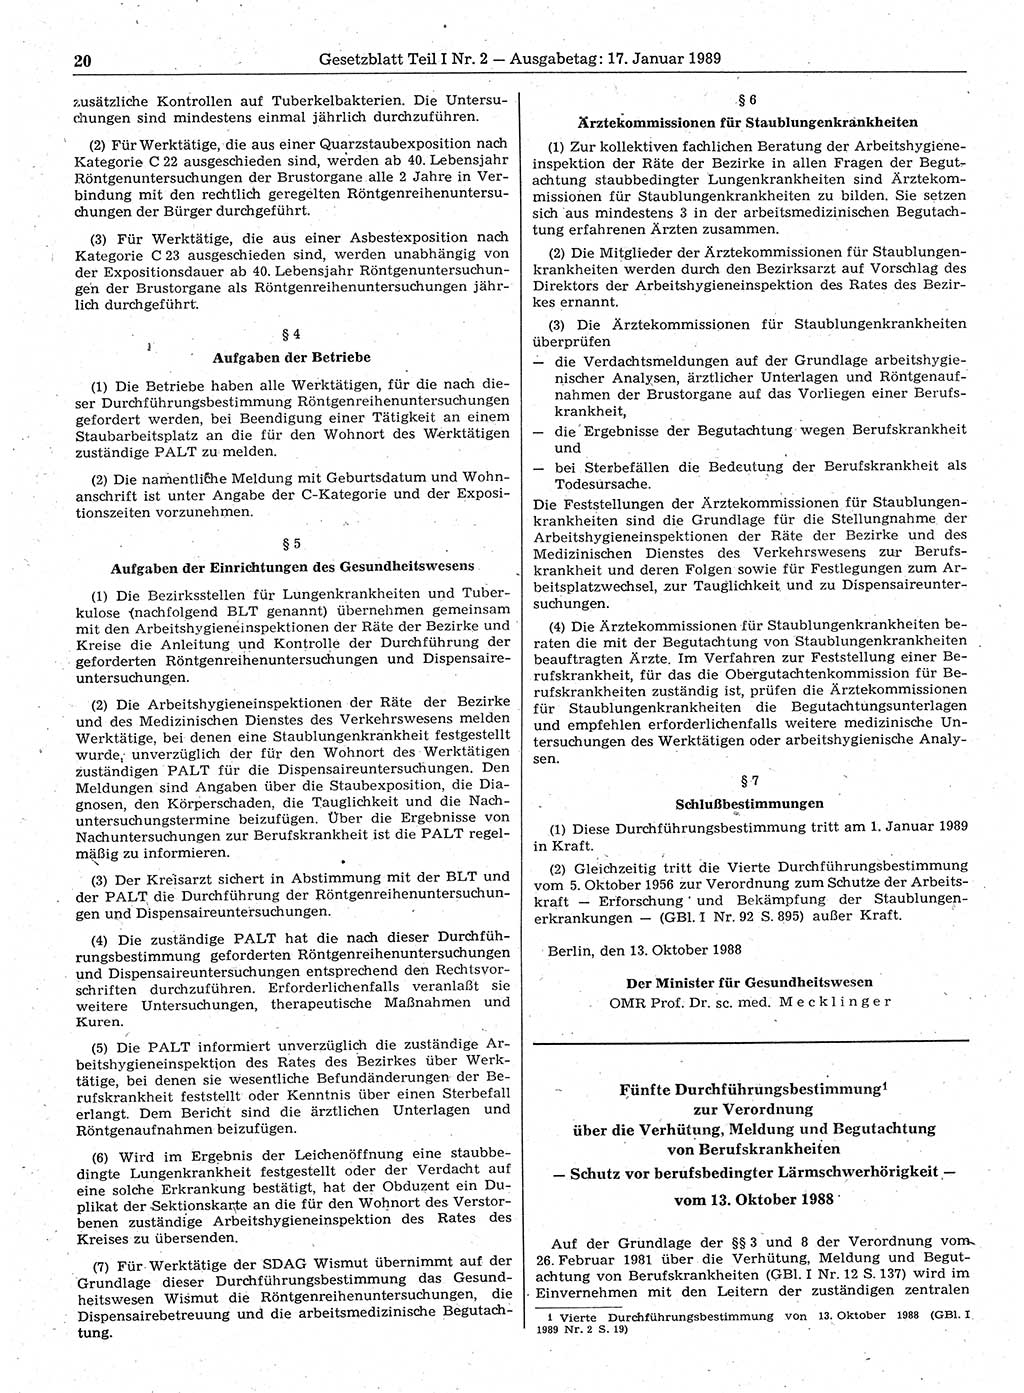 Gesetzblatt (GBl.) der Deutschen Demokratischen Republik (DDR) Teil Ⅰ 1989, Seite 20 (GBl. DDR Ⅰ 1989, S. 20)